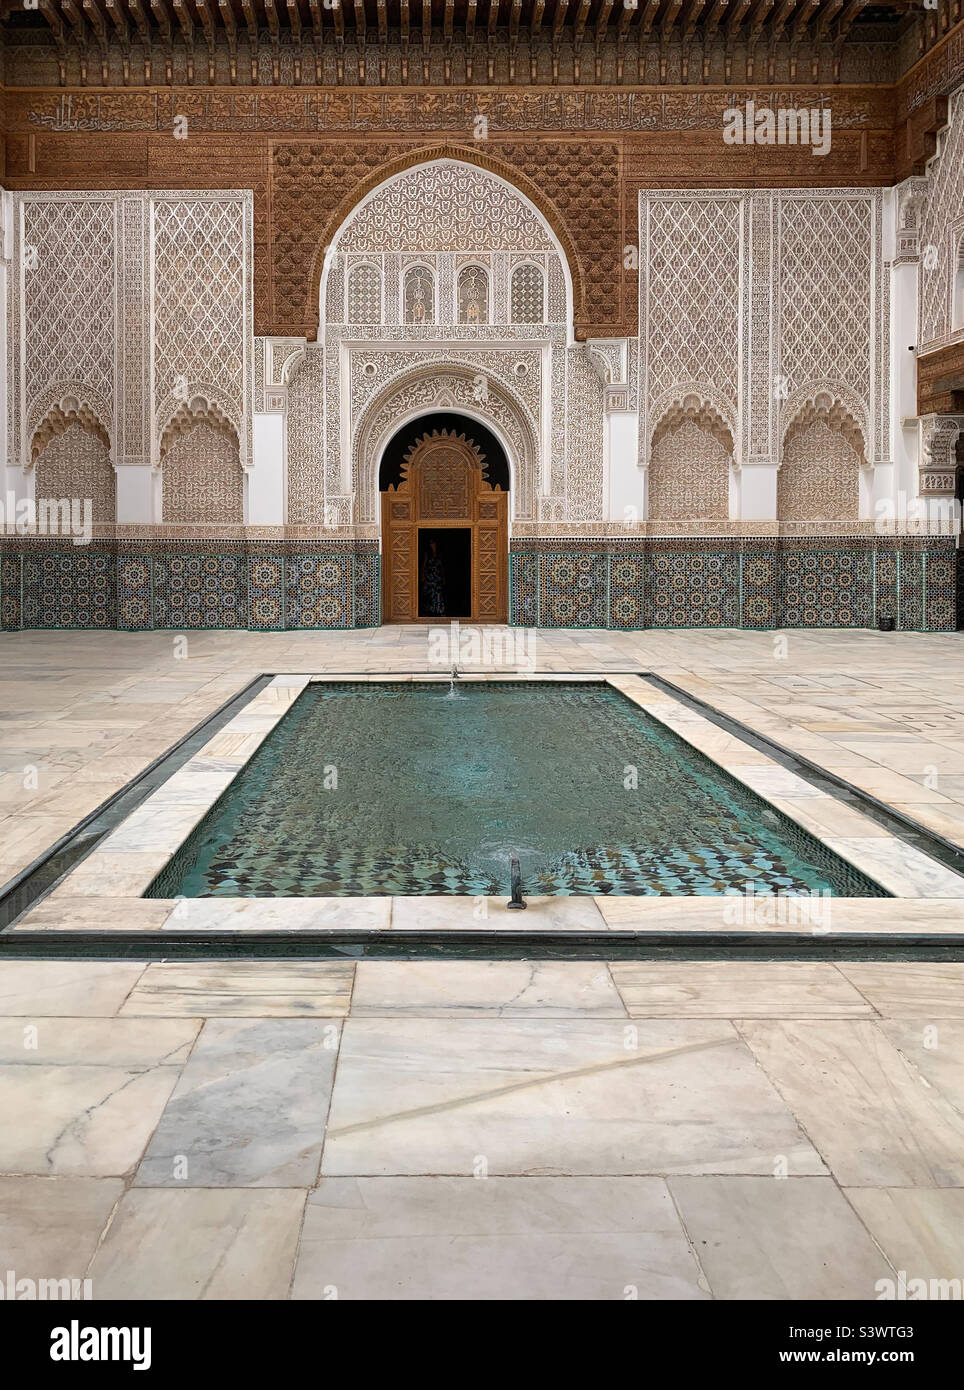 Il cortile principale e la piscina riflettente nella Madrasa ben Youssef, un tempo la più grande scuola islamica del Marocco, Marrakech, Marocco, Nord Africa. Foto Stock